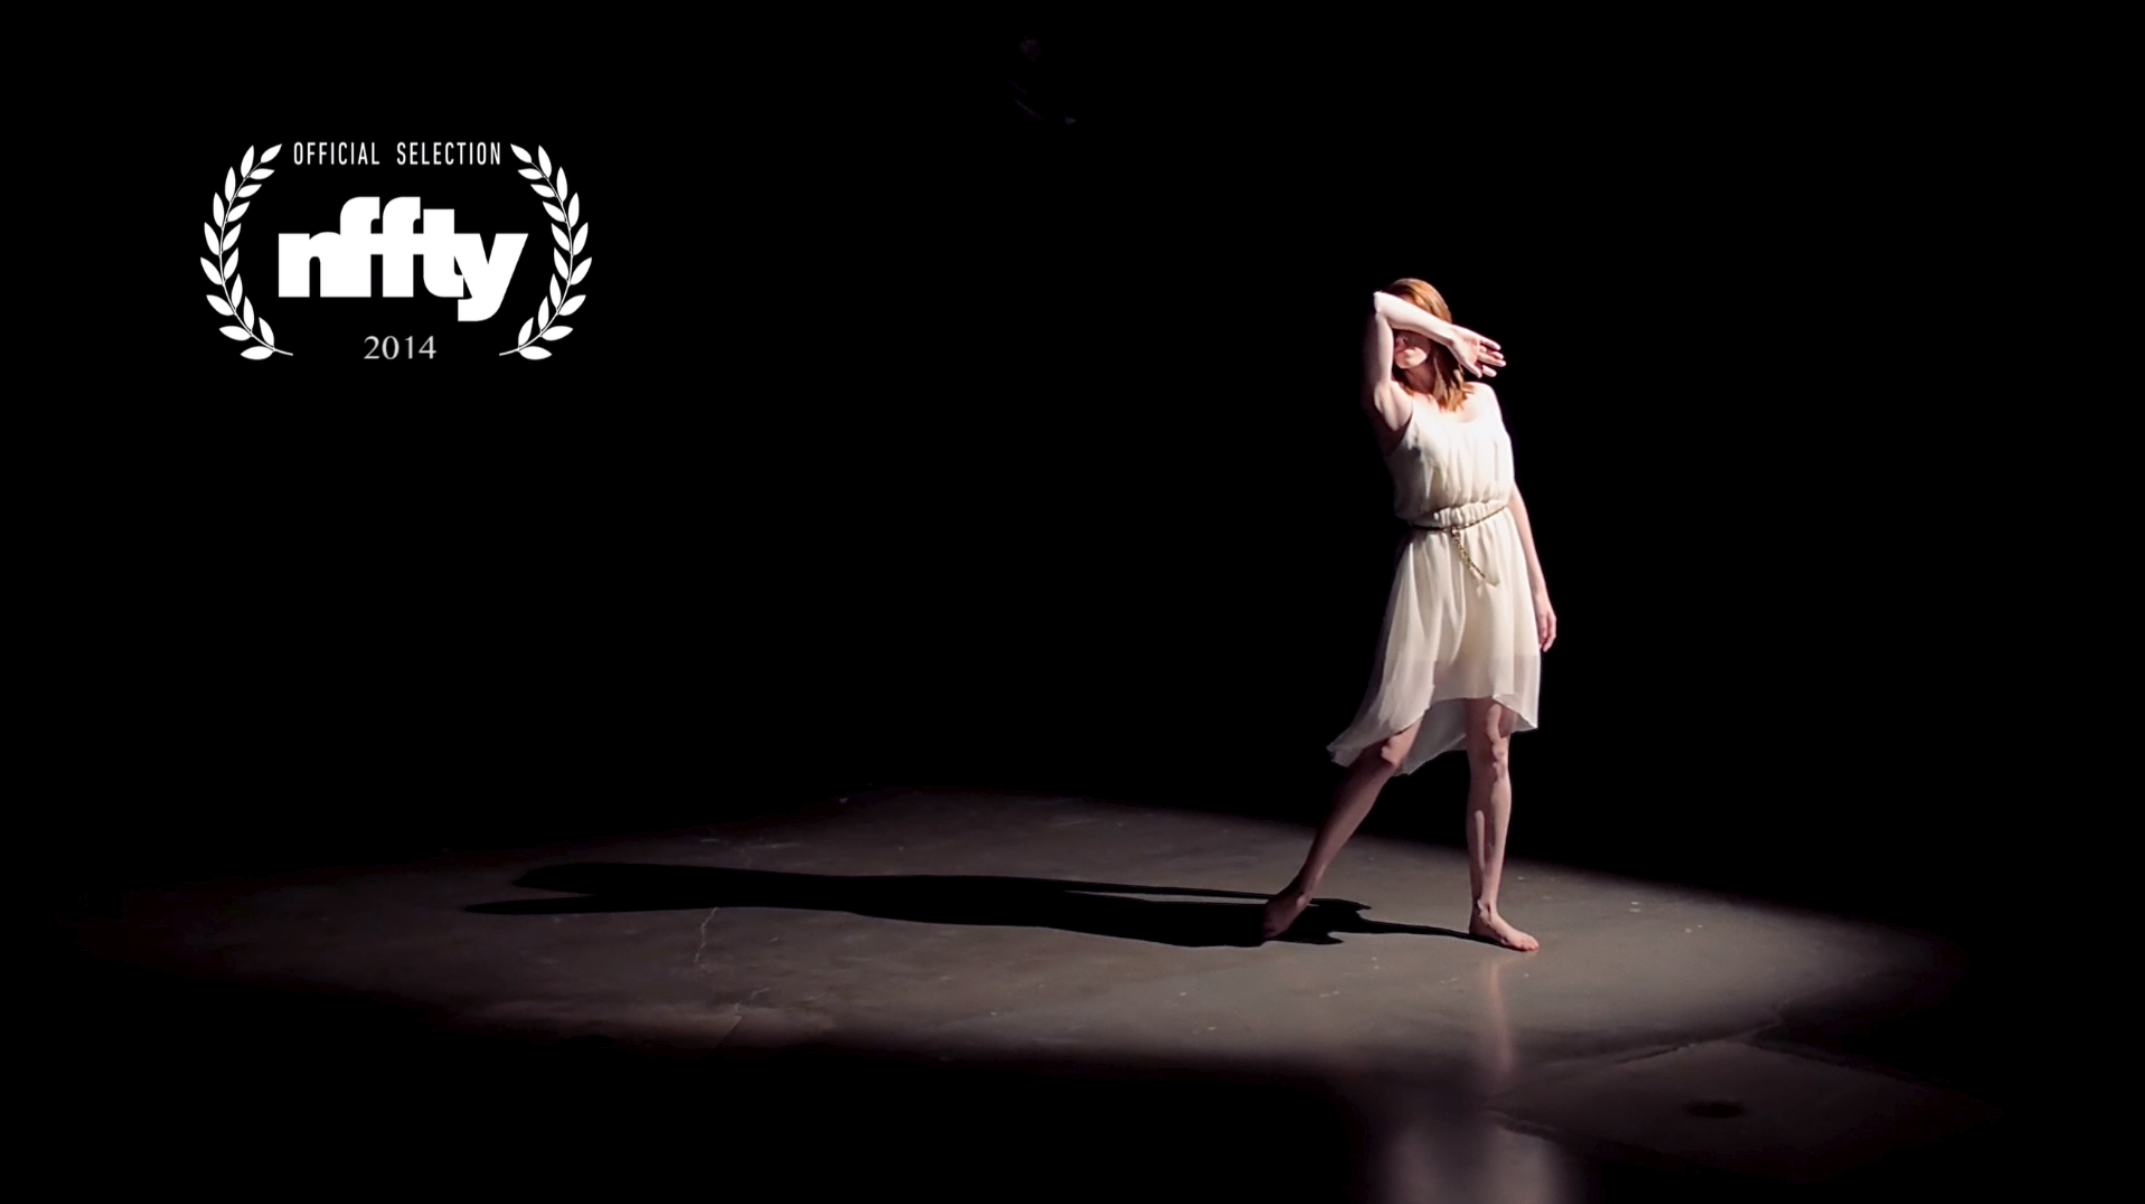 The Blind Dance // Short Film